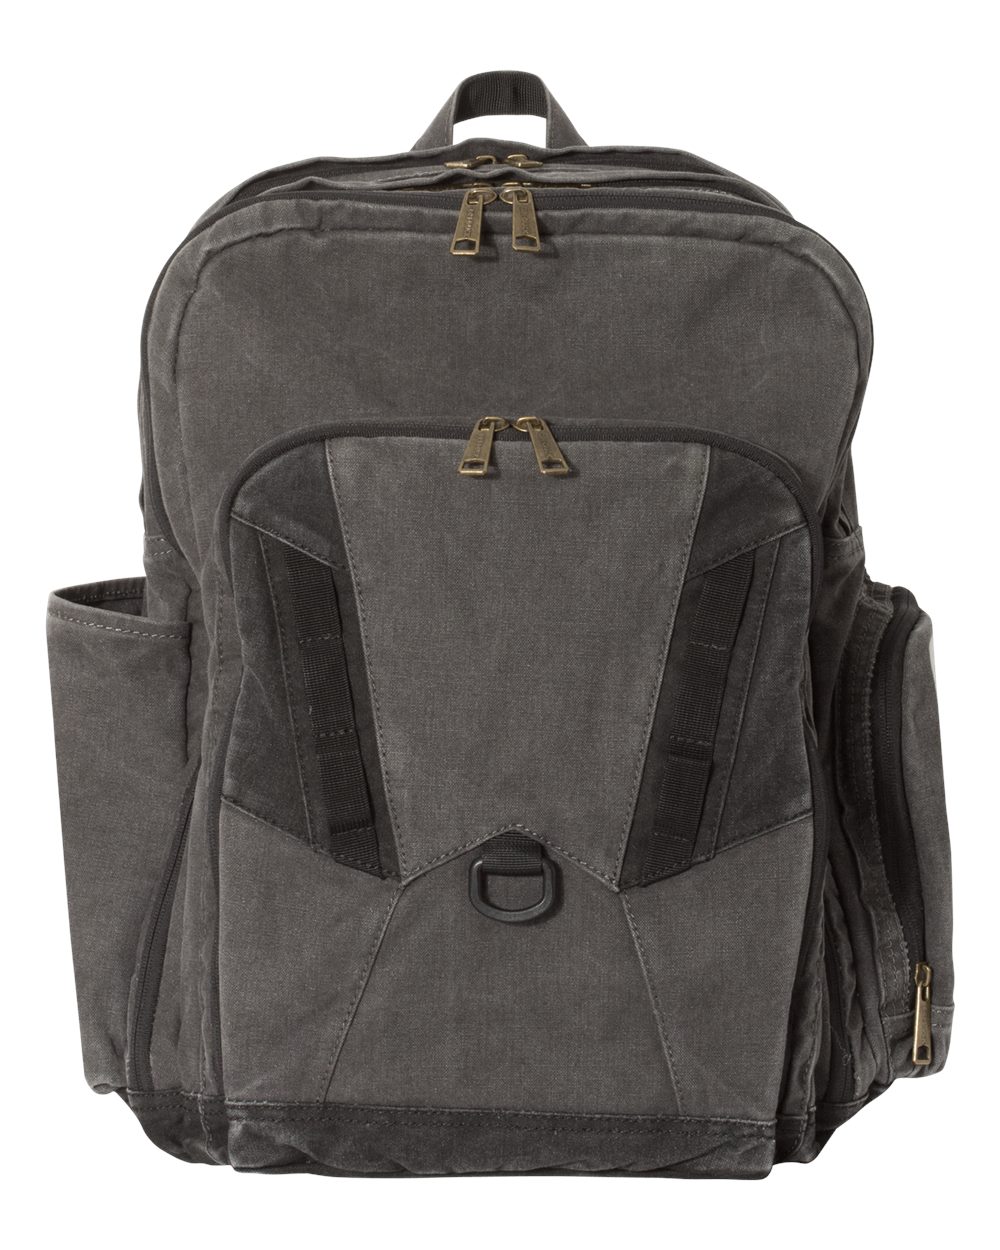 32L Traveler Backpack-DRI DUCK